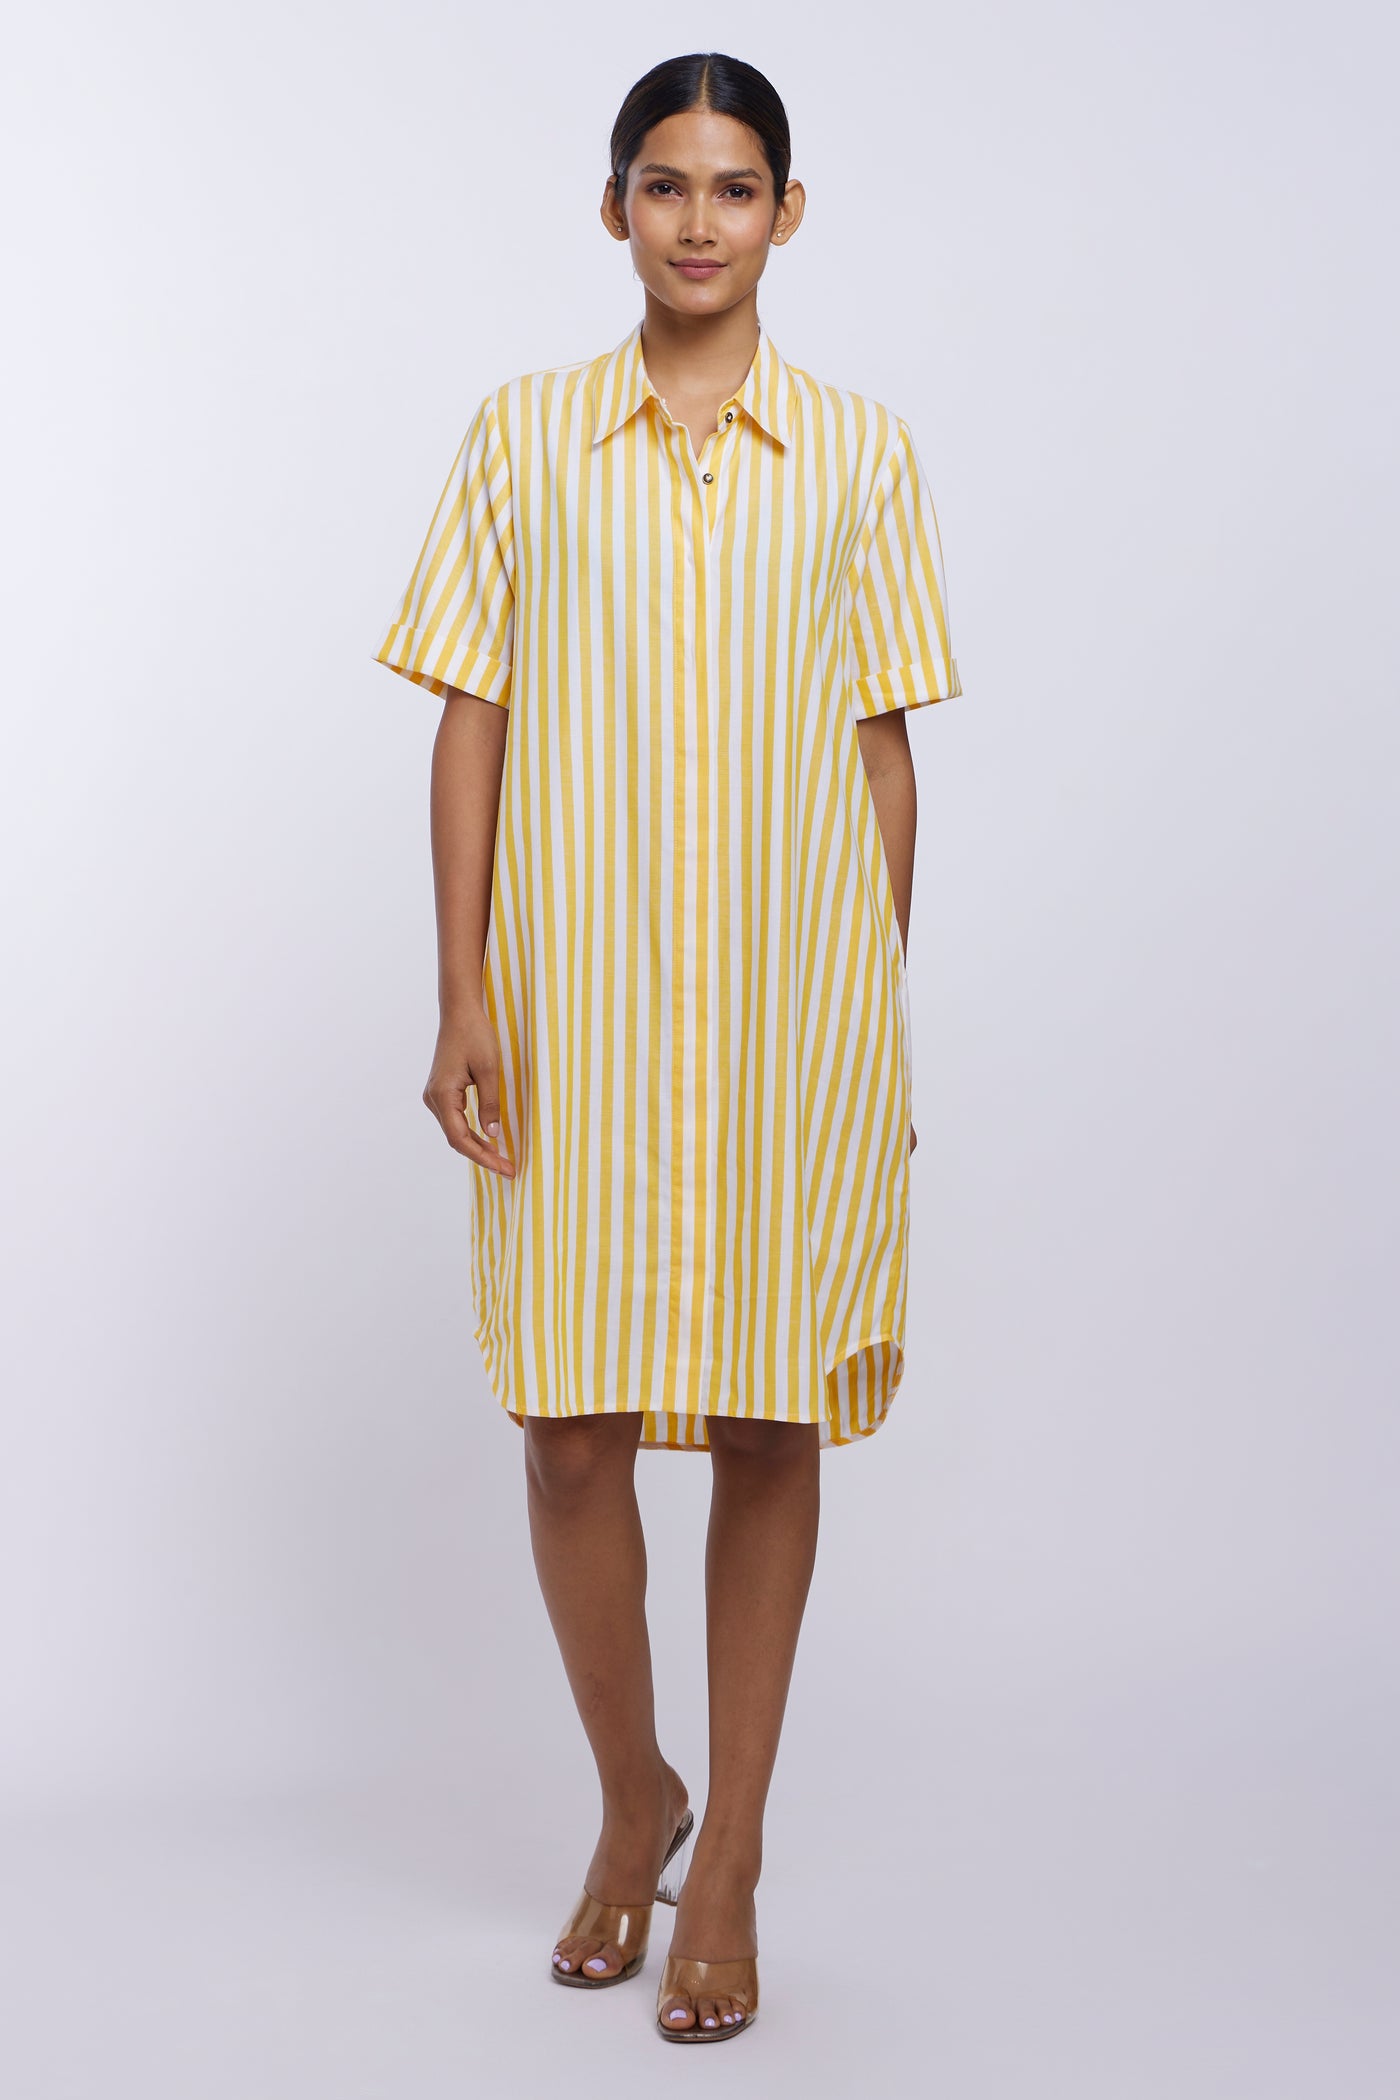 Yellow Stripes Button-Down Dress